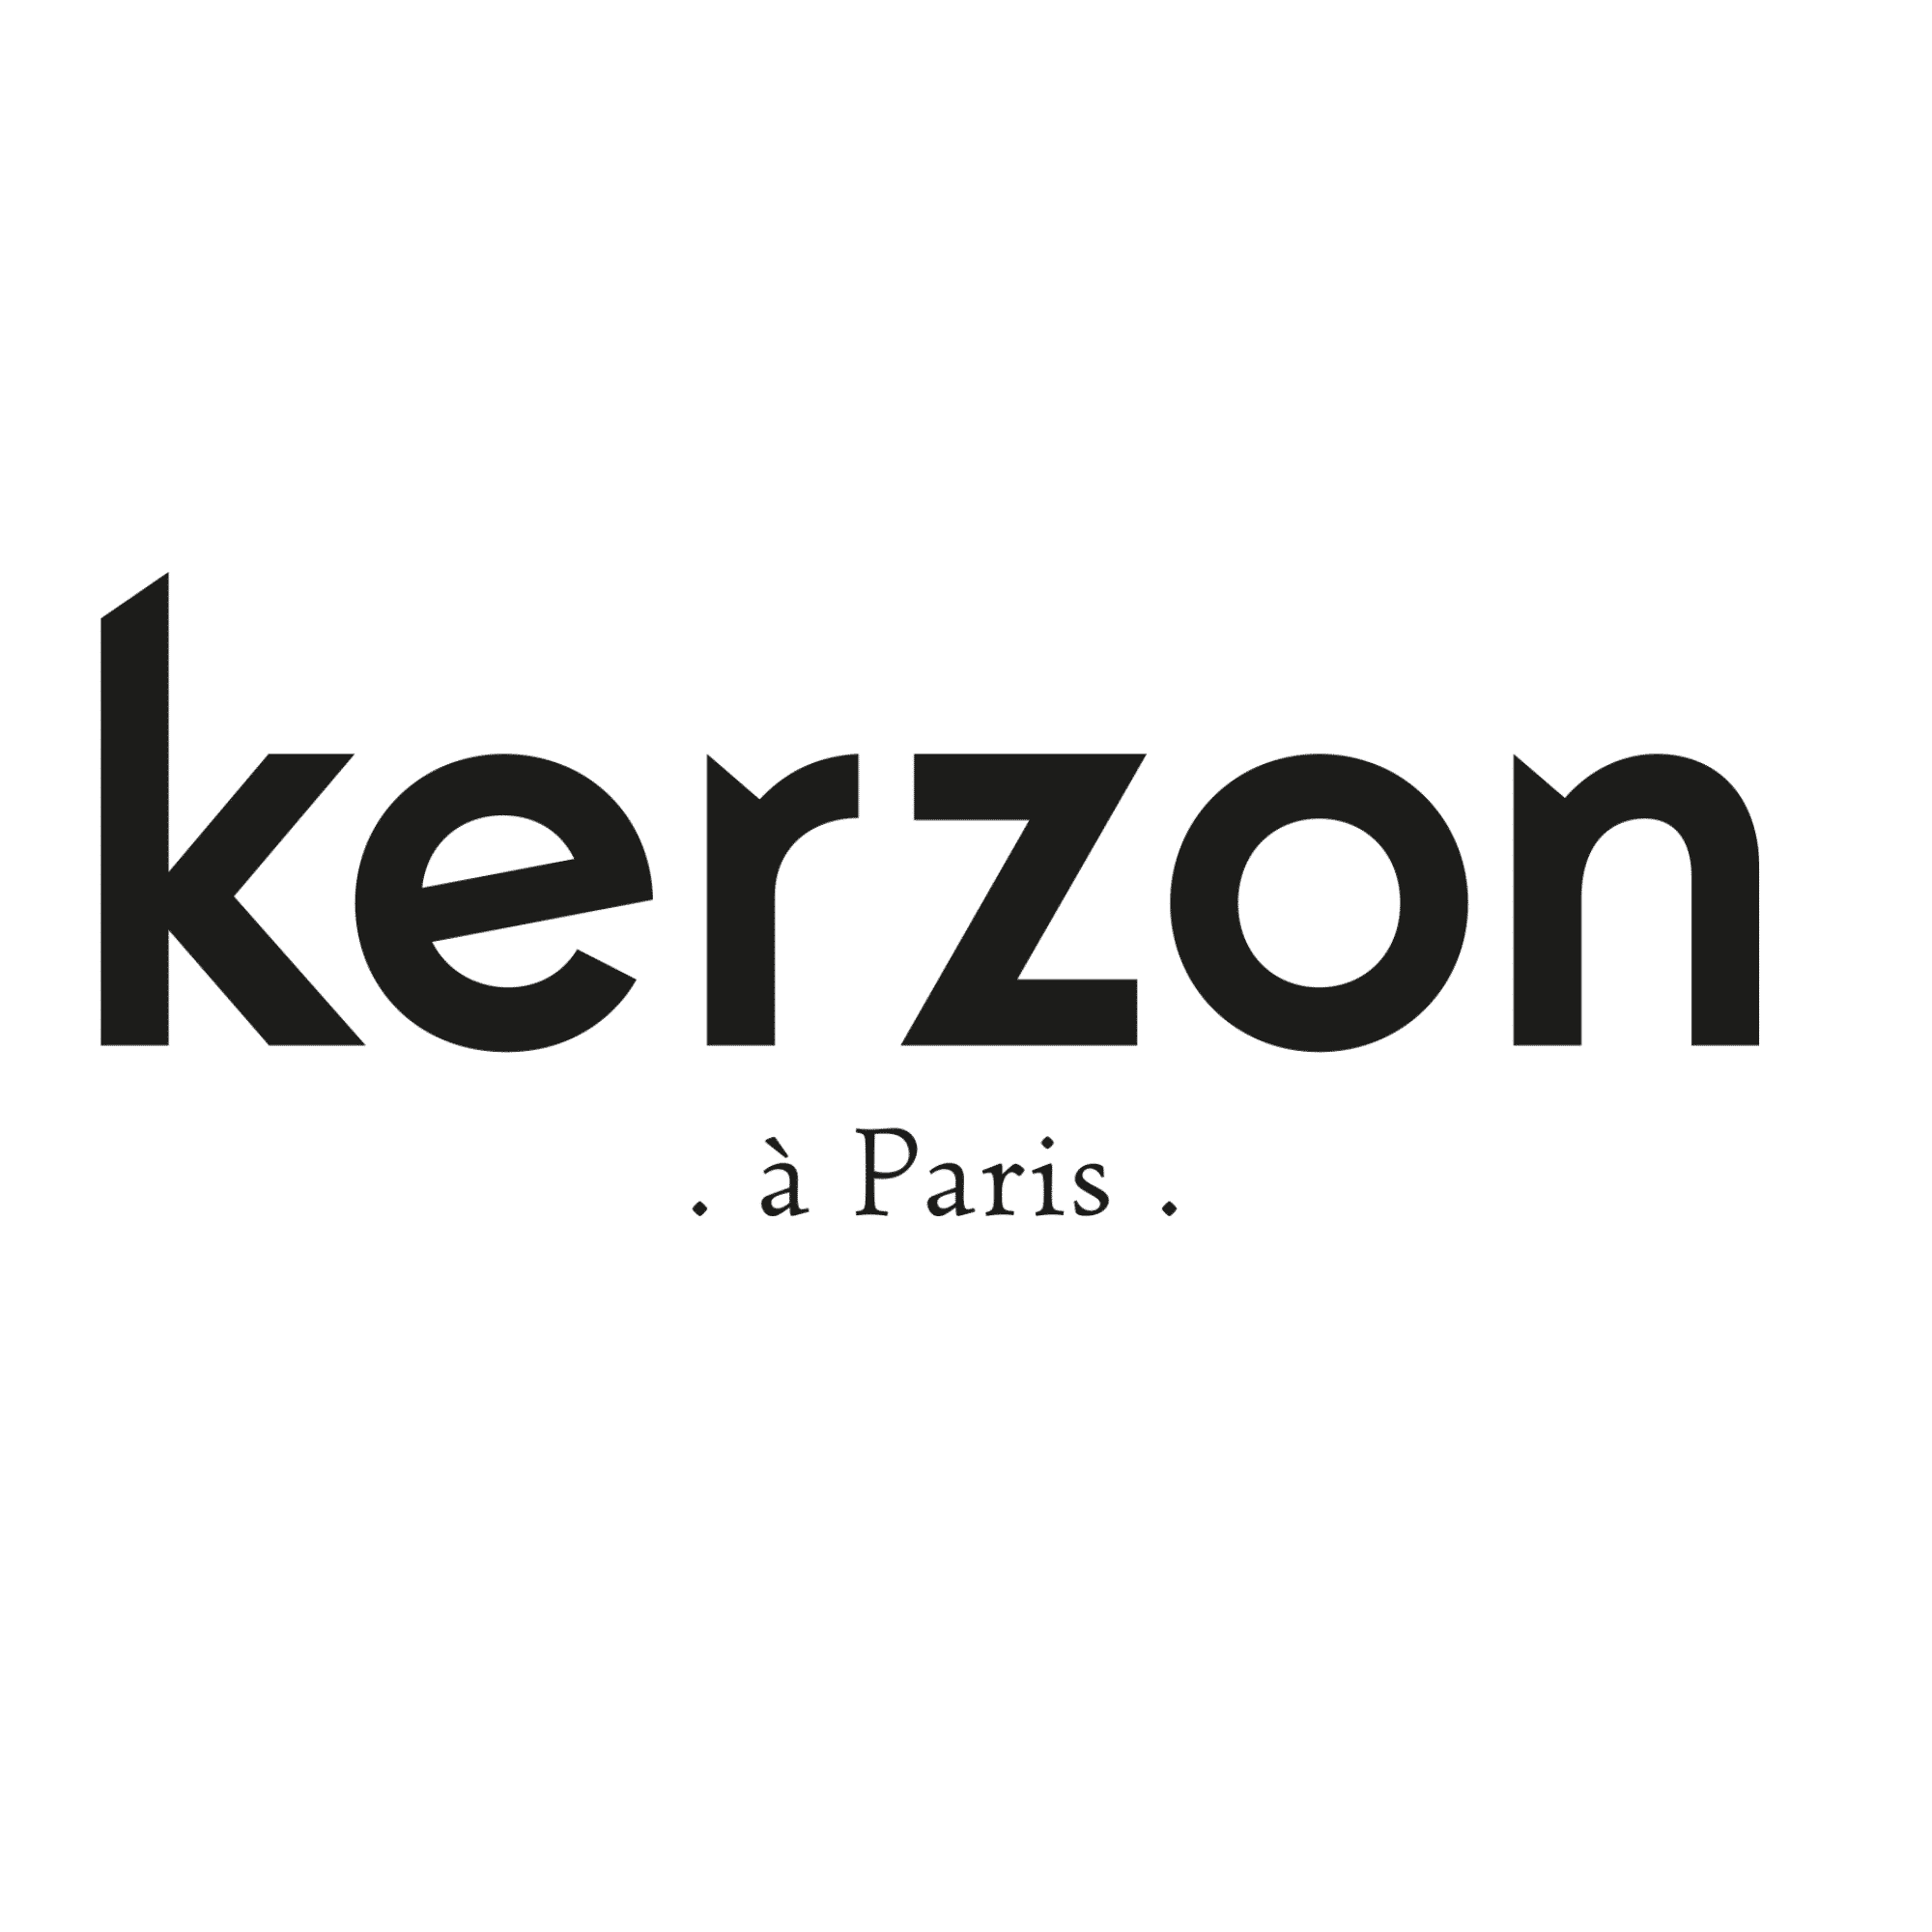 Kerzon logo